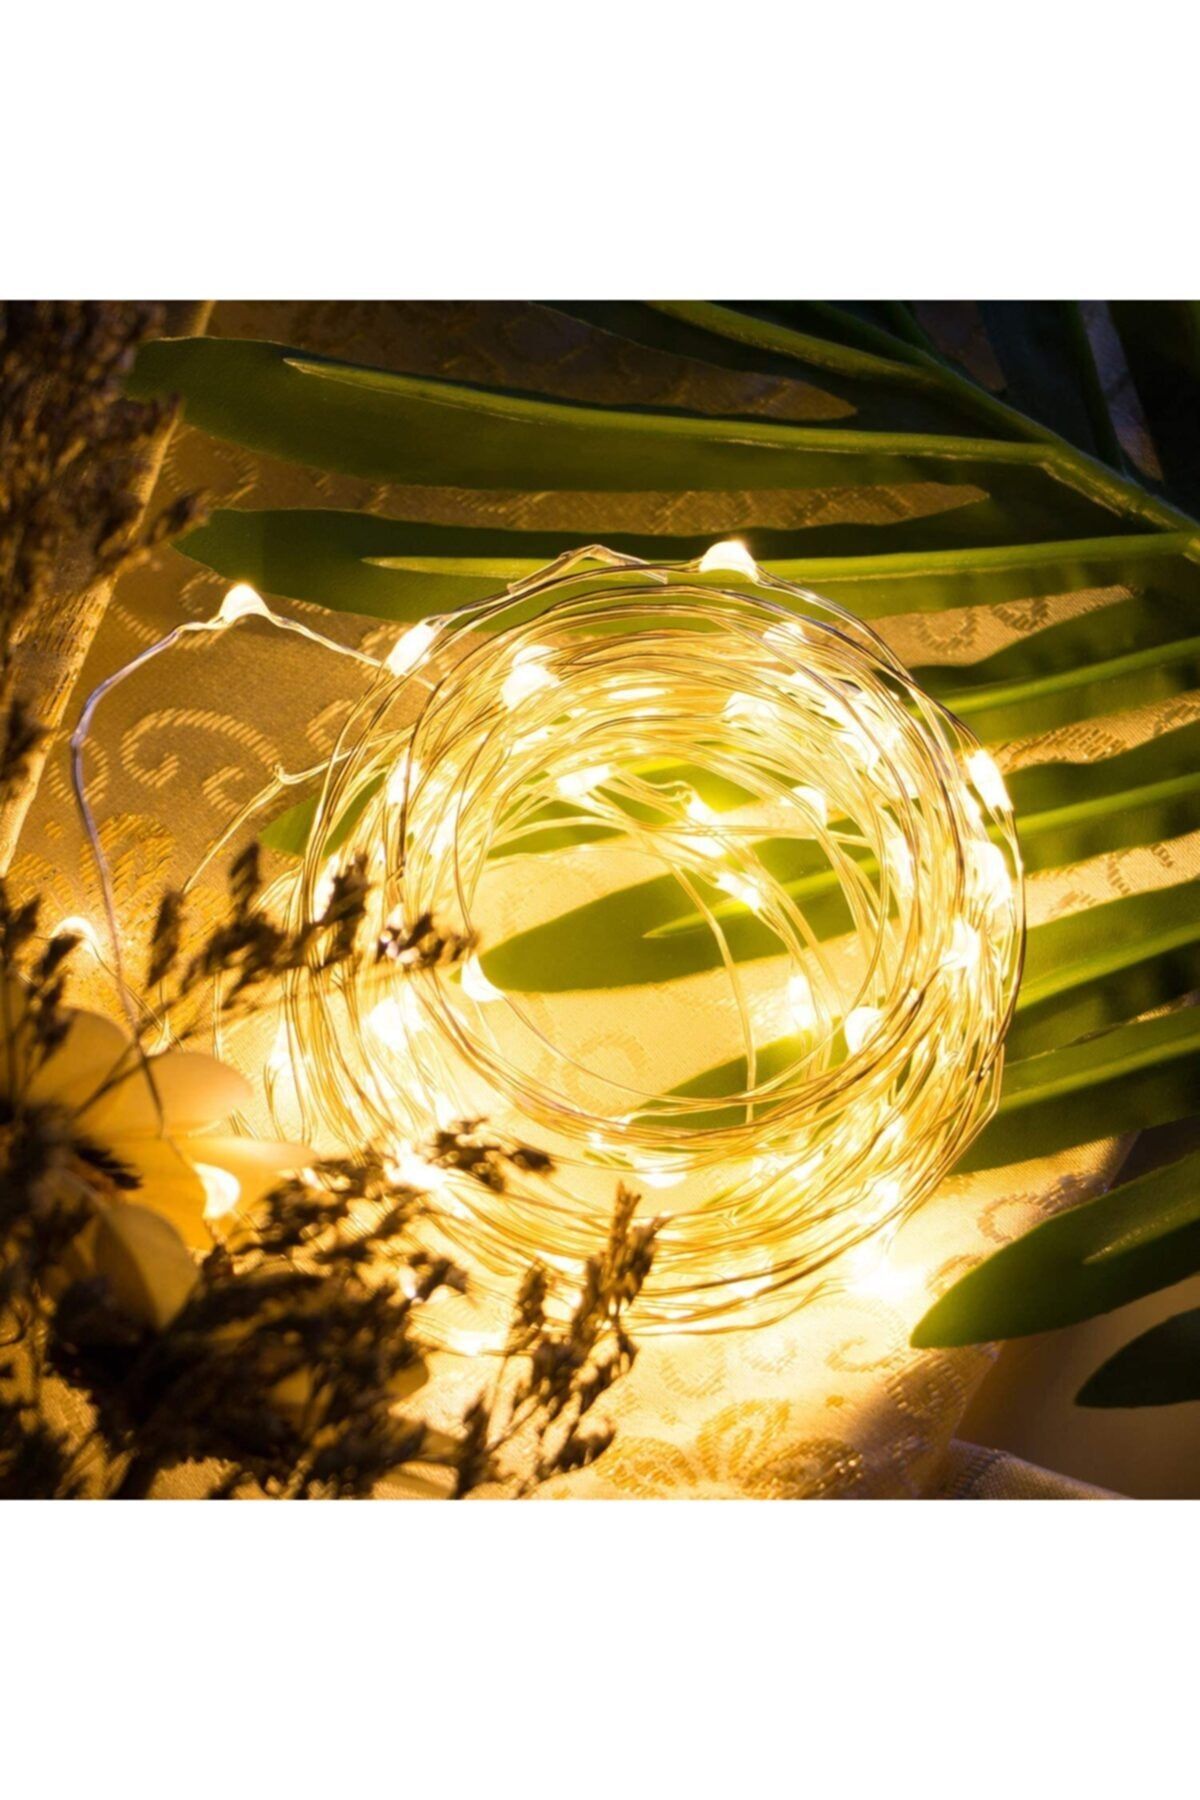 Lumenn Peri Led Işık 3 metre|Su Geçirmez Esnek ve Güçlü Işık Performansı-Gün Işığı Tel Şerit Led